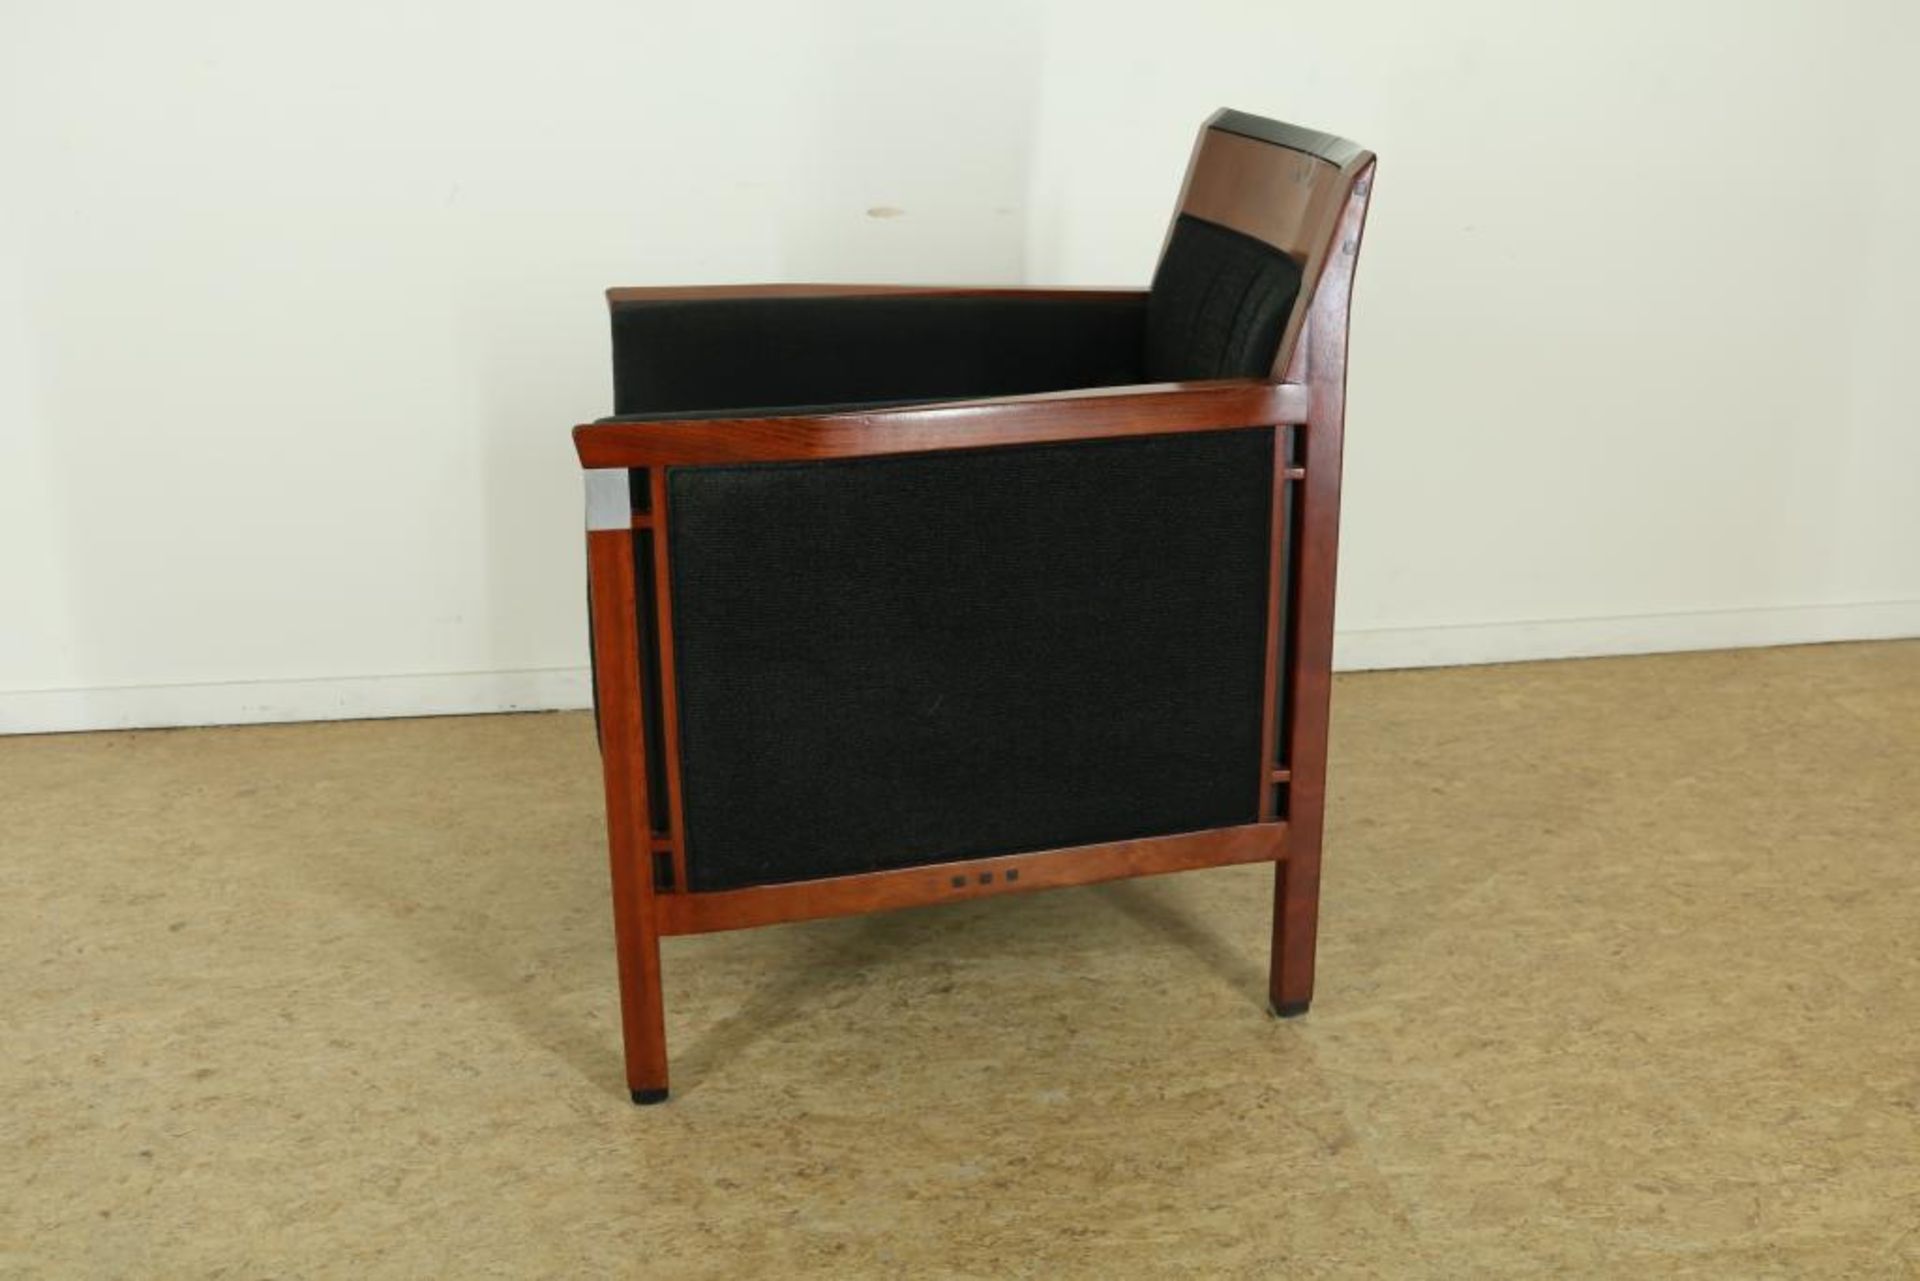 Schuitema decoforma fauteuil met stoffen bekleding. - Bild 2 aus 4